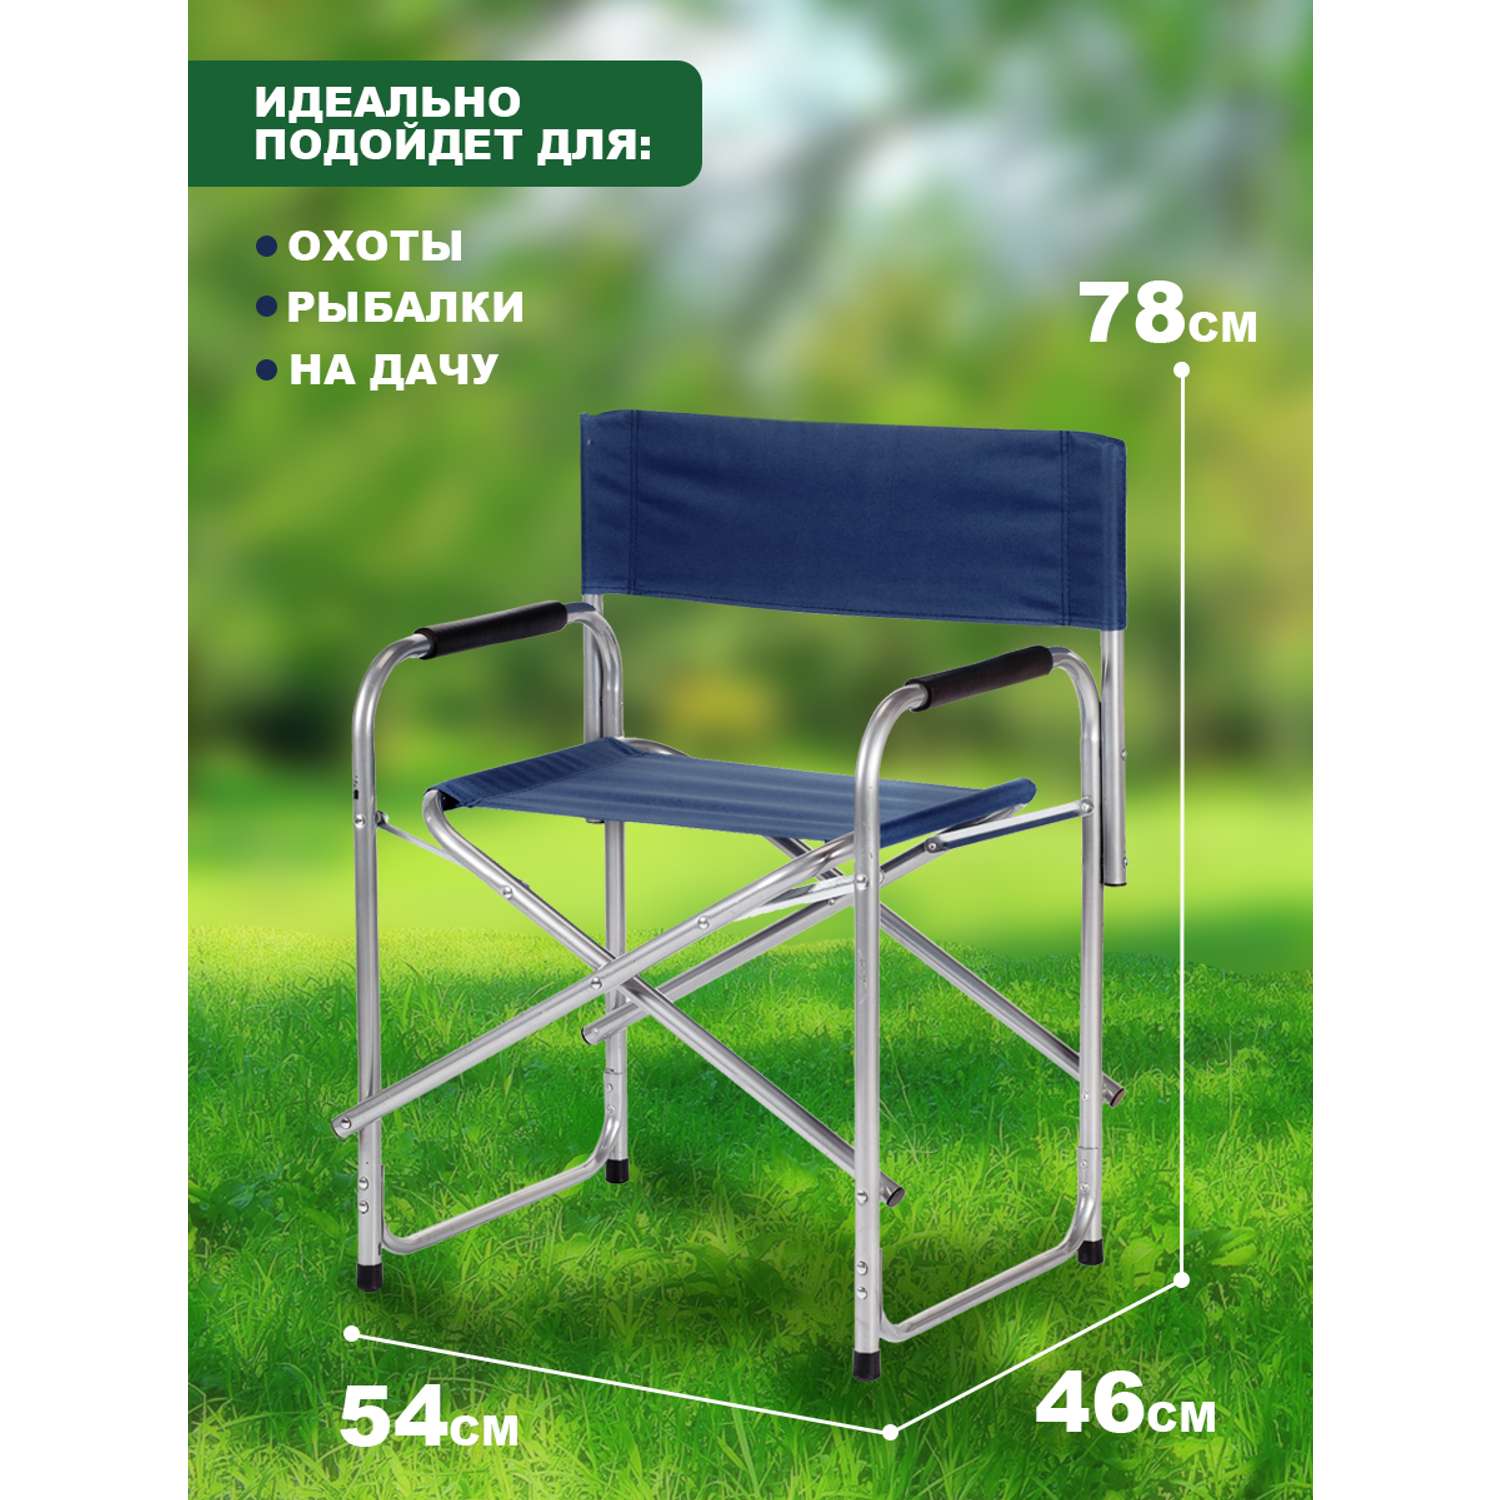 69591 стул складной с подлок 60х53х75 см camping palisad